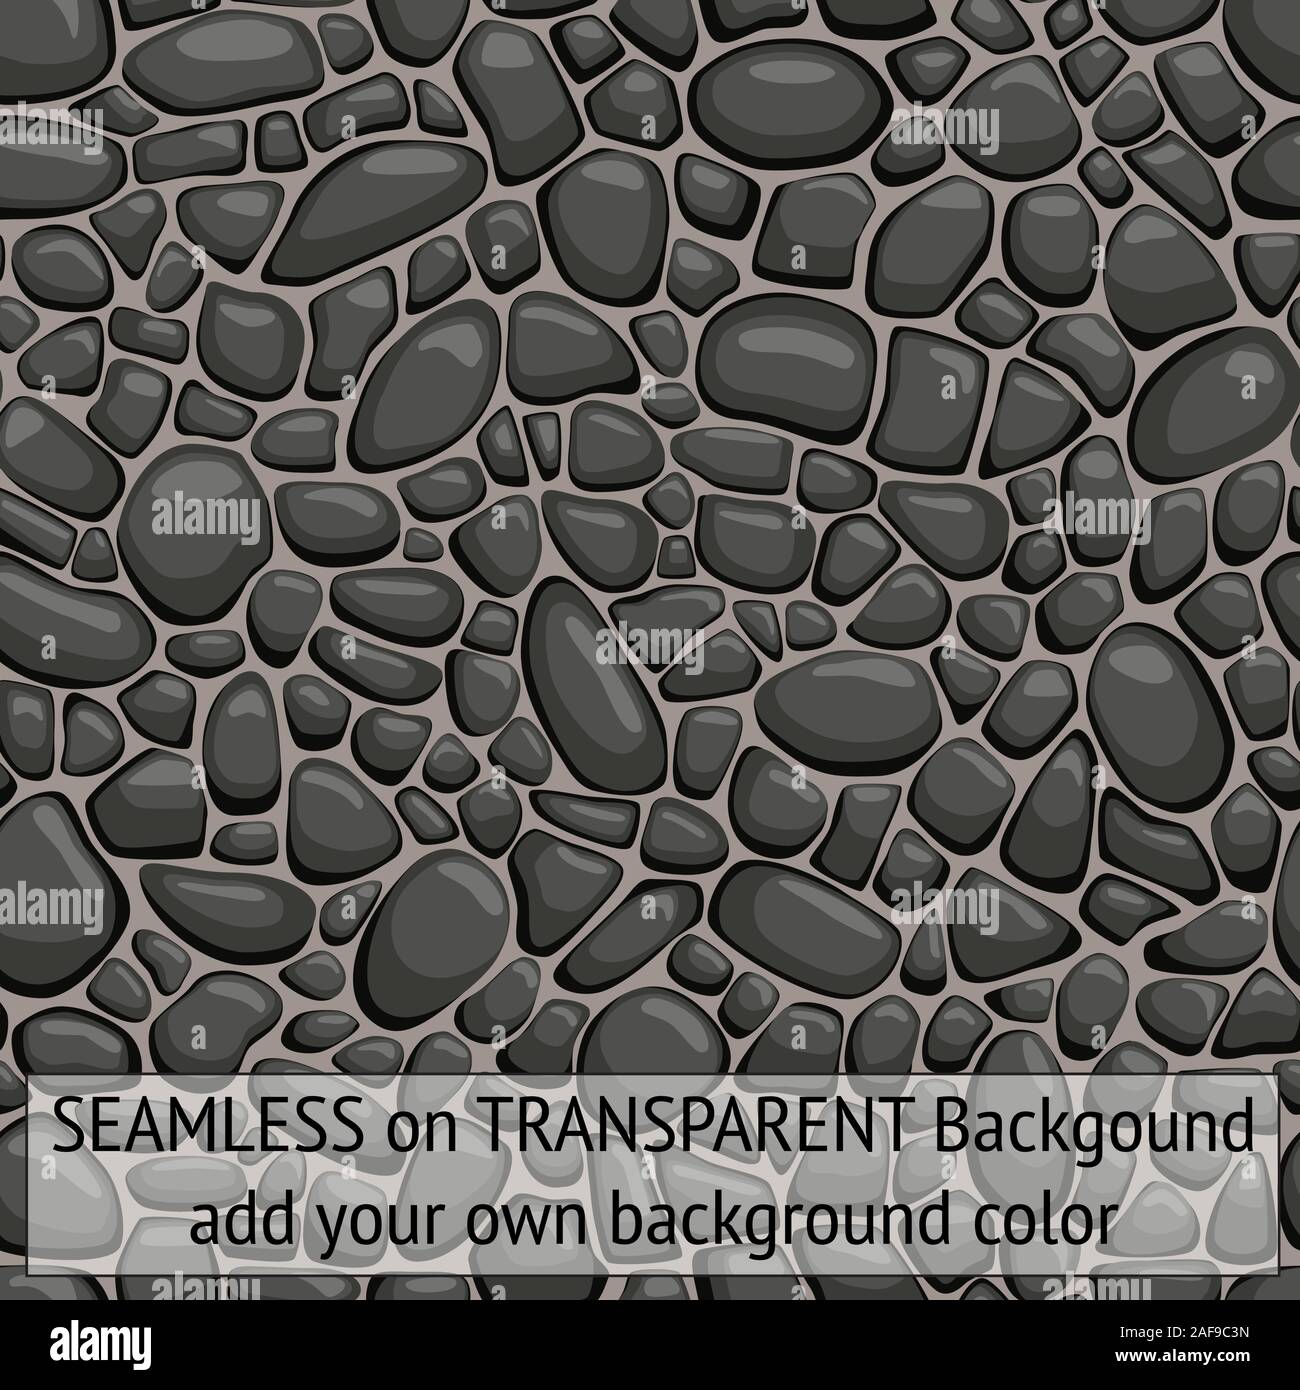 Pierres cailloux transparent noir avec fond transparent de sorte que vous pouvez ajouter votre propre couleur de fond de fins détails Illustration de Vecteur